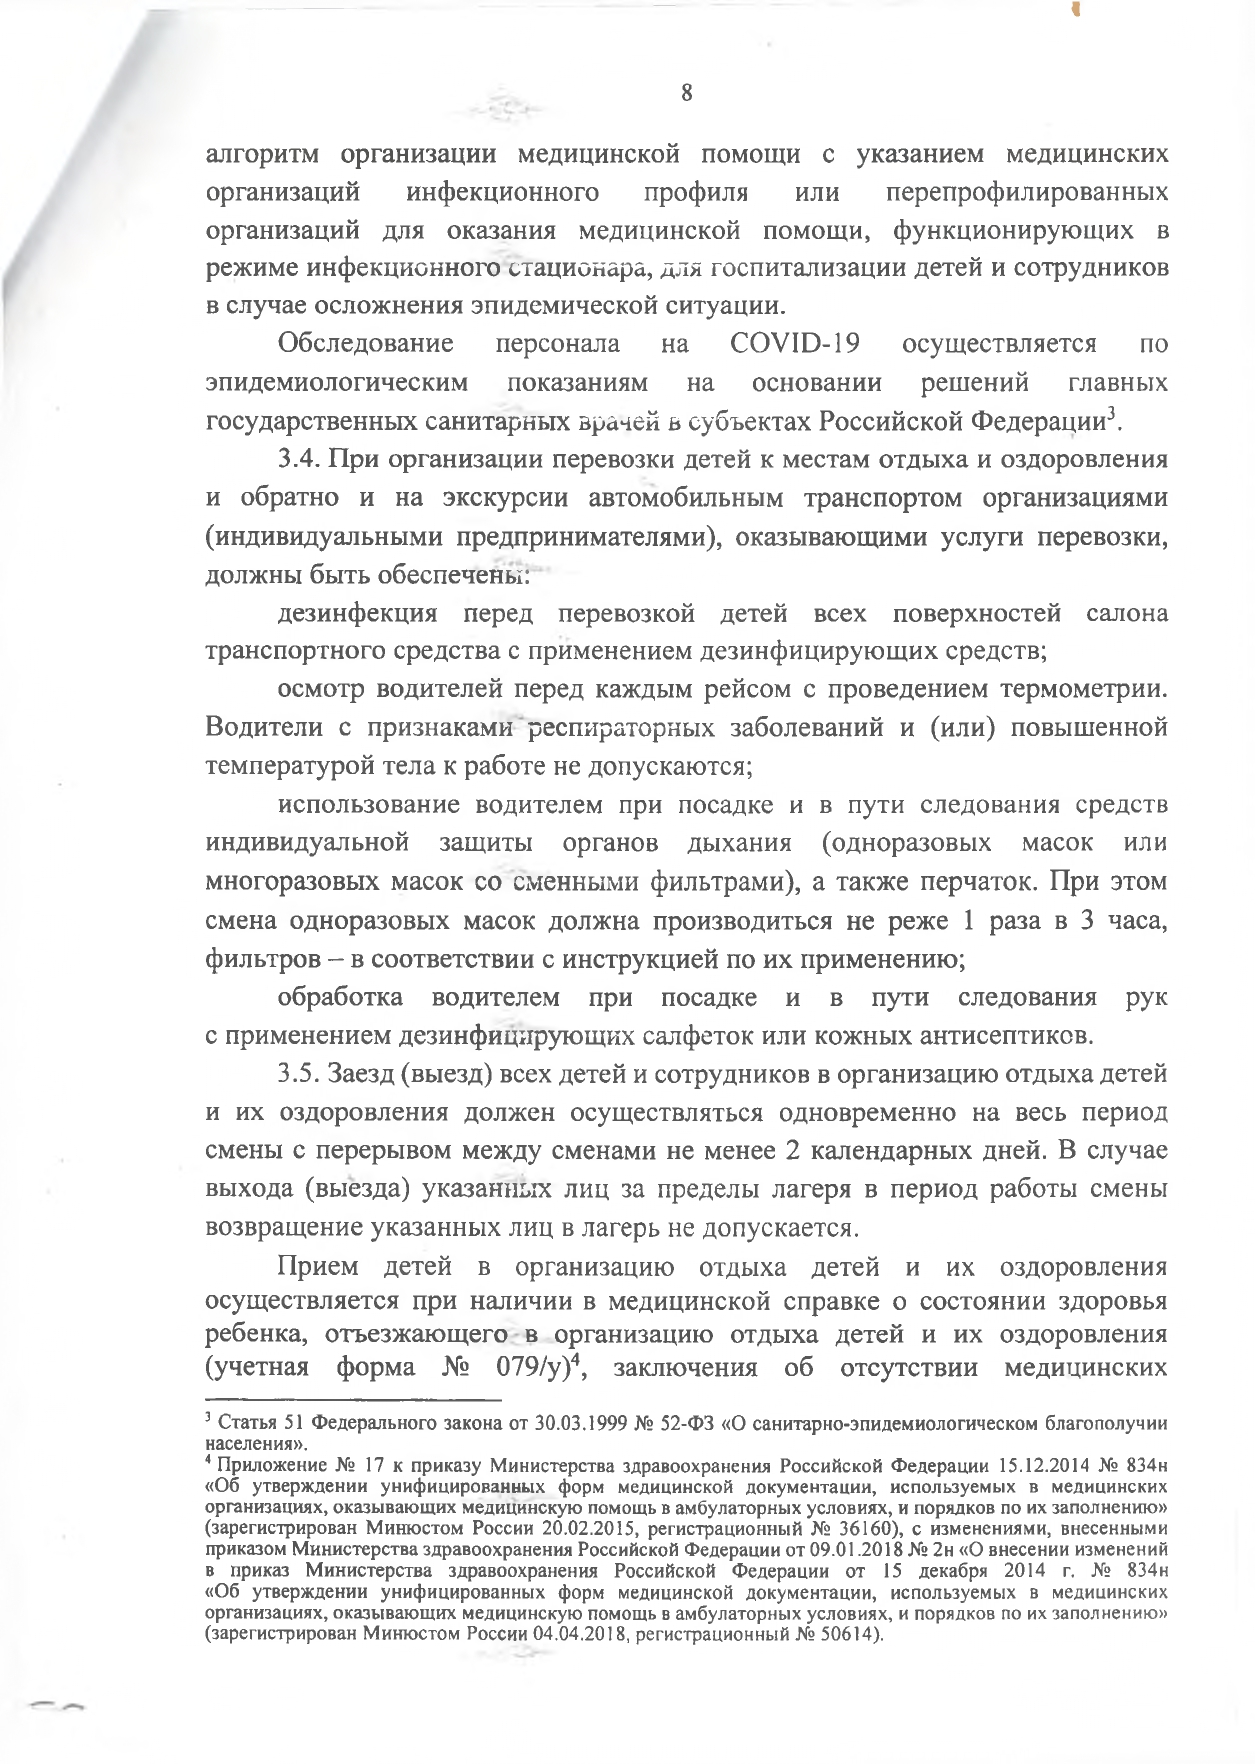 нормативные документы коронавирус page 0022